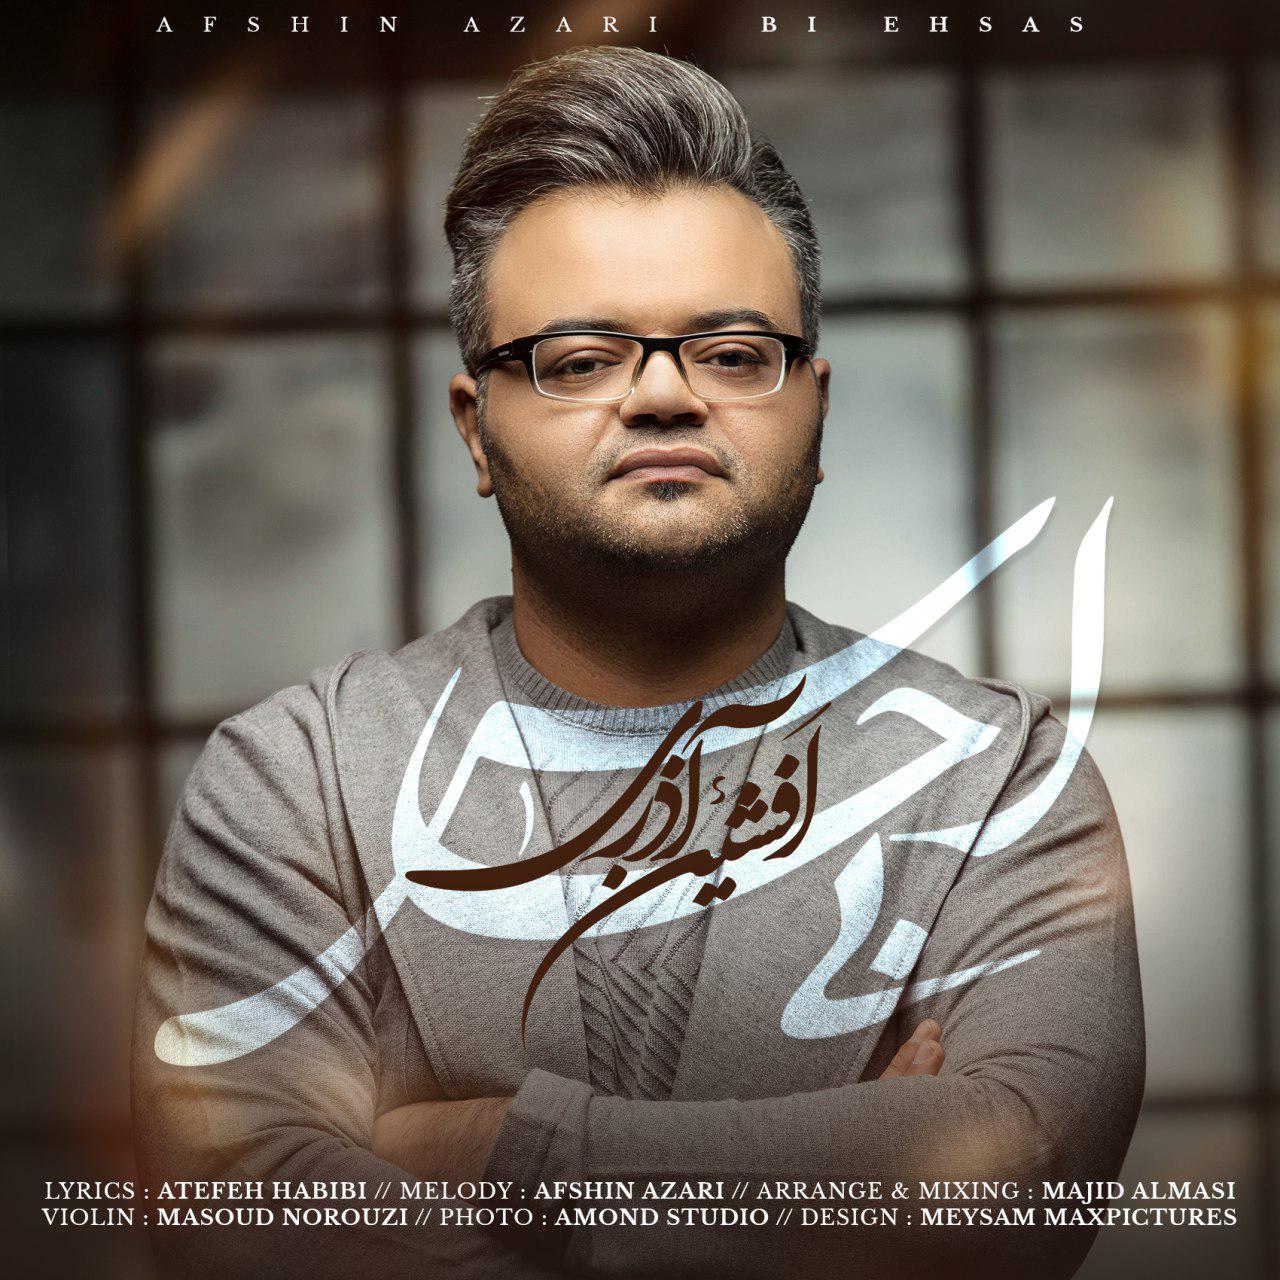  دانلود آهنگ جدید افشین آذری - بی احساس | Download New Music By Afshin Azari - Bi Ehsas